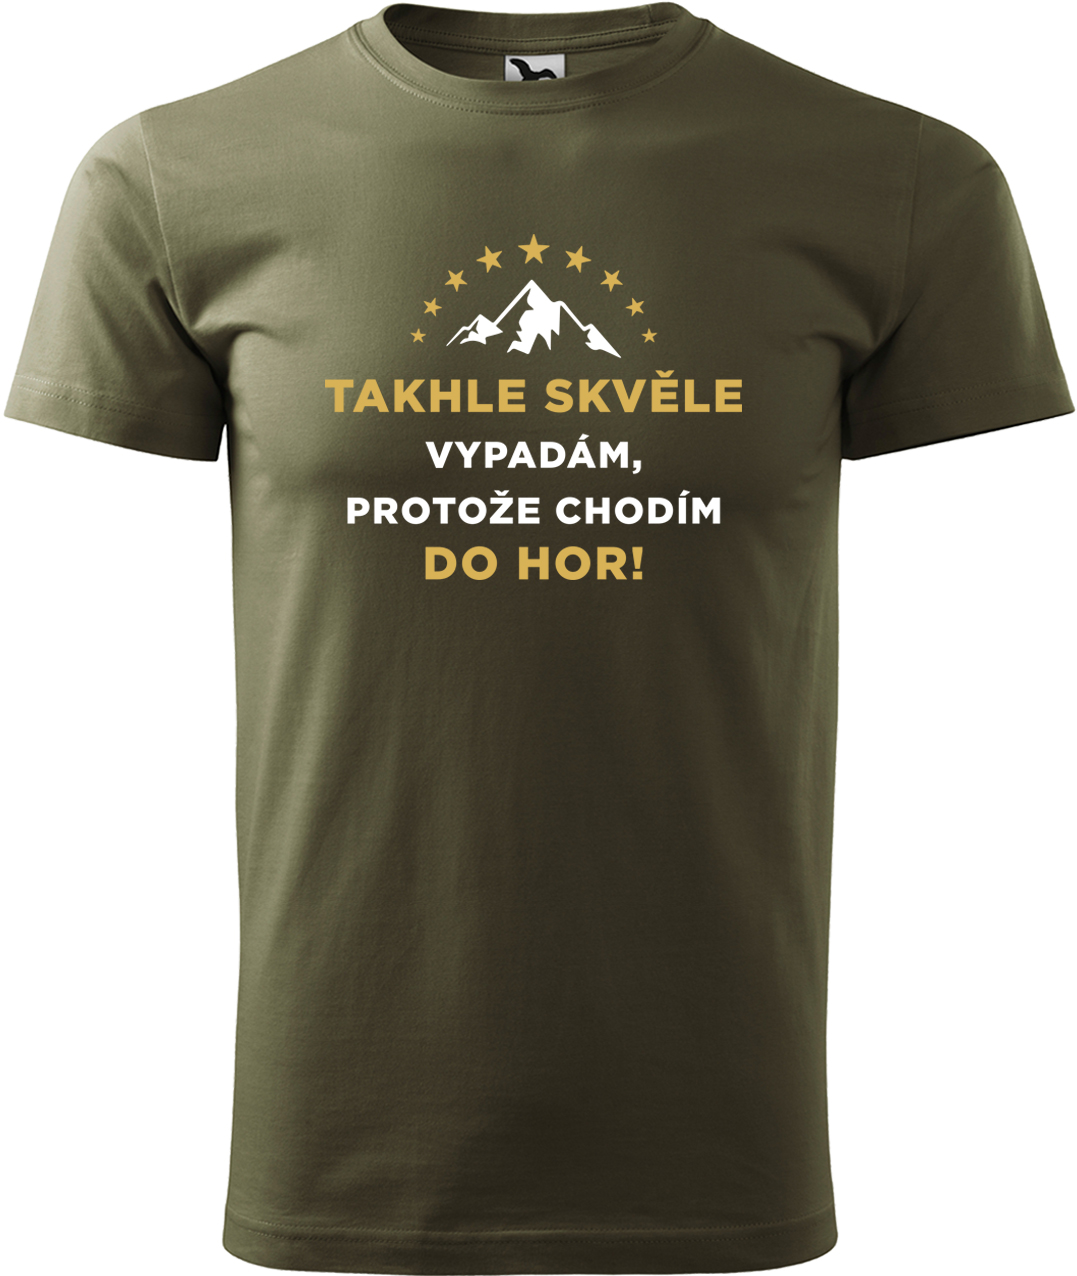 Pánské tričko na hory - Takhle skvěle vypadám, protože chodím do hor Velikost: 3XL, Barva: Military (69), Střih: pánský